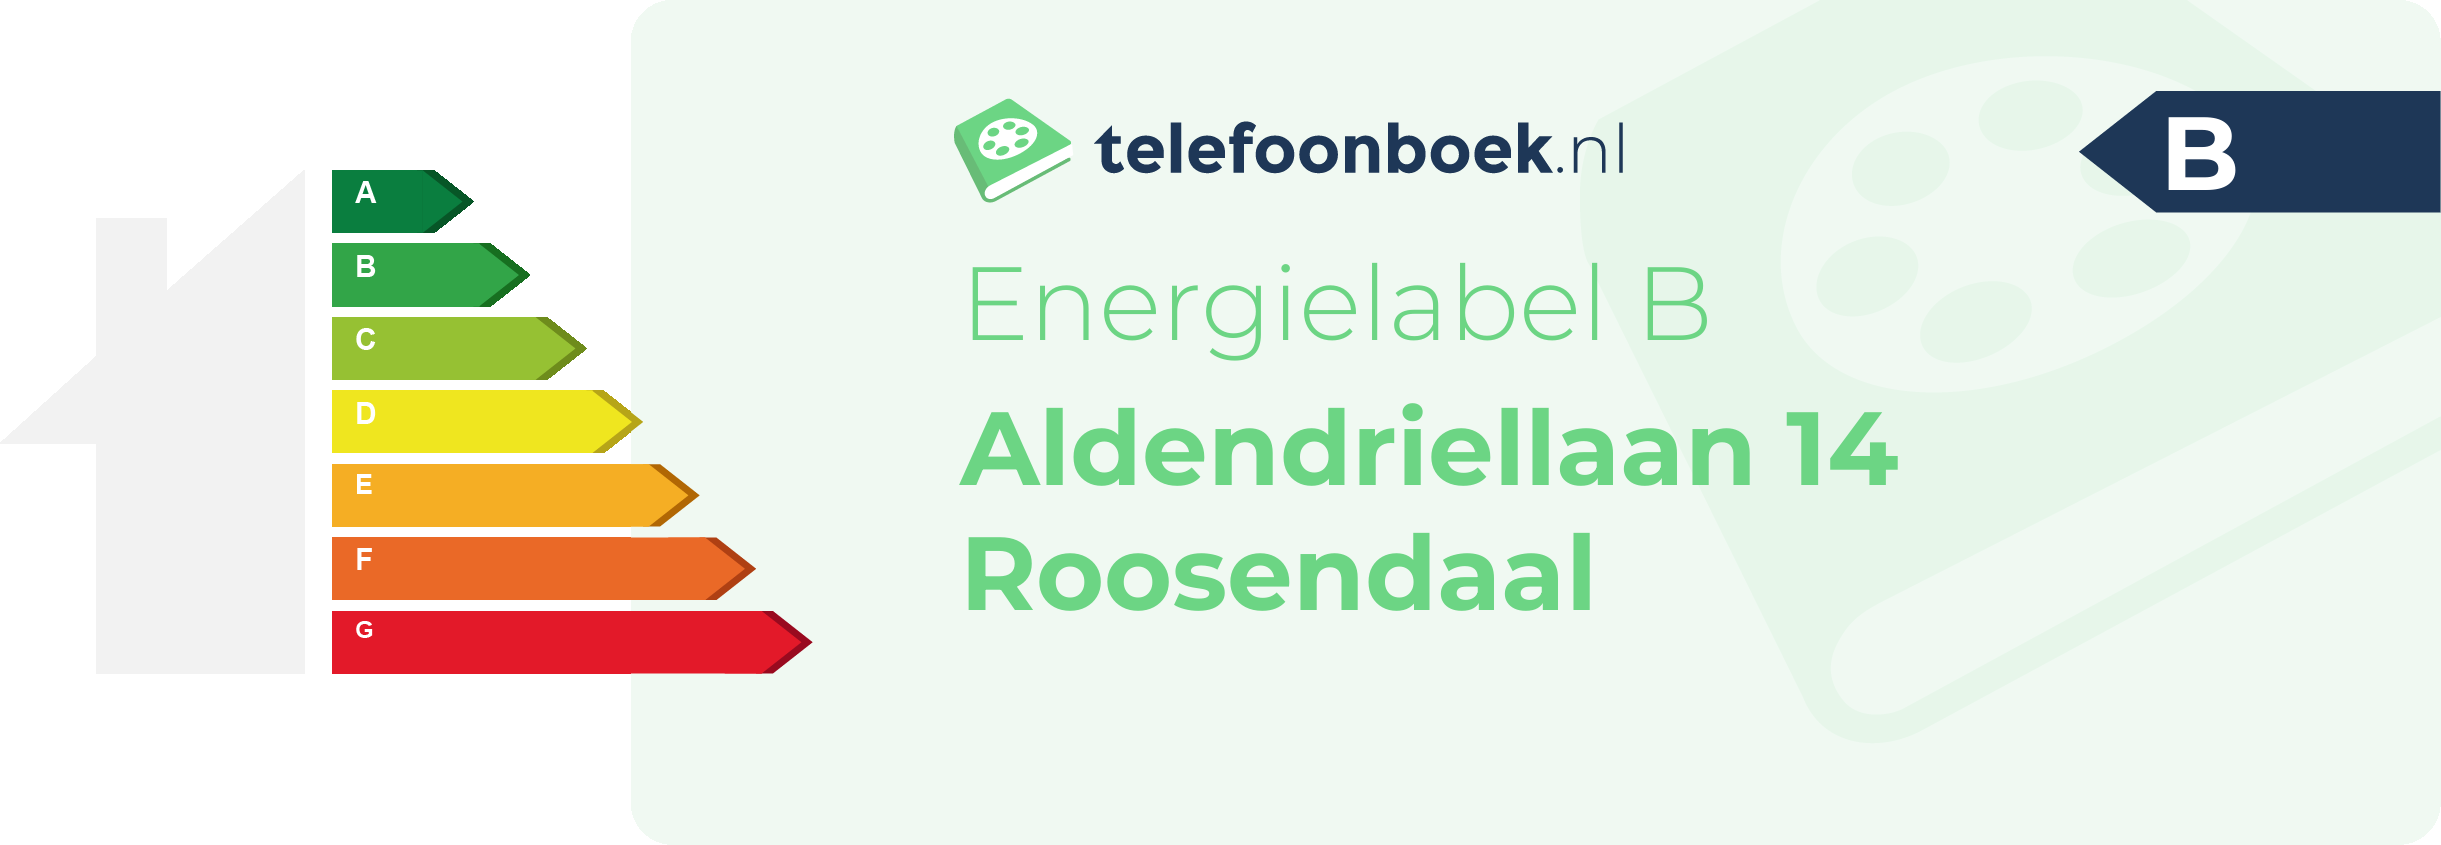 Energielabel Aldendriellaan 14 Roosendaal